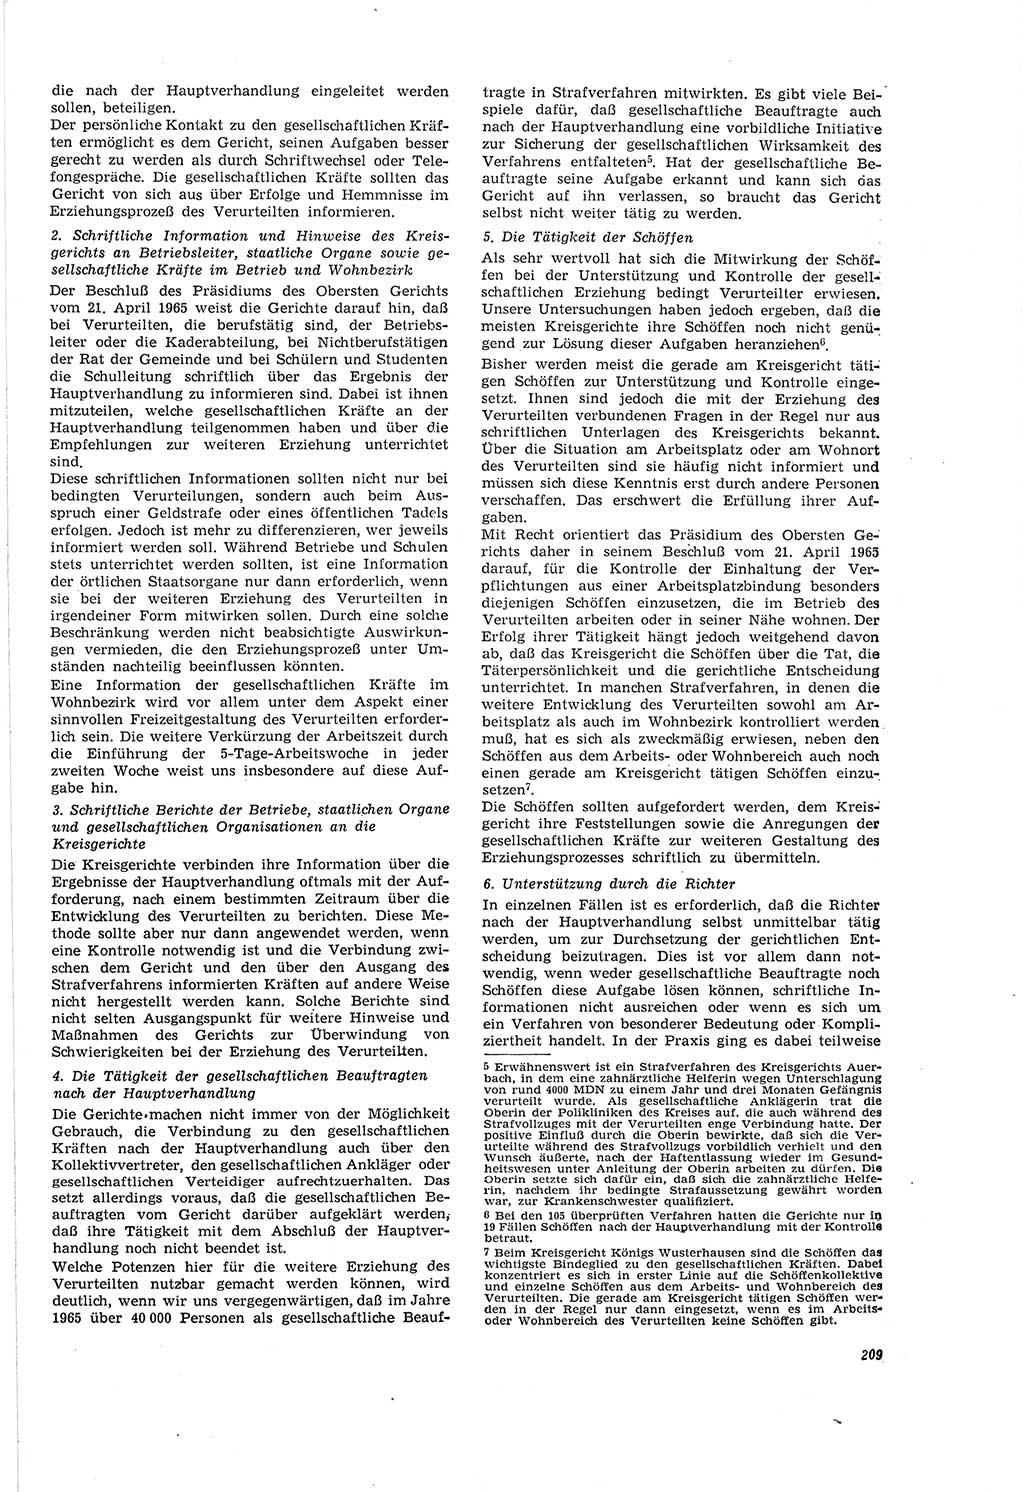 Neue Justiz (NJ), Zeitschrift für Recht und Rechtswissenschaft [Deutsche Demokratische Republik (DDR)], 20. Jahrgang 1966, Seite 209 (NJ DDR 1966, S. 209)